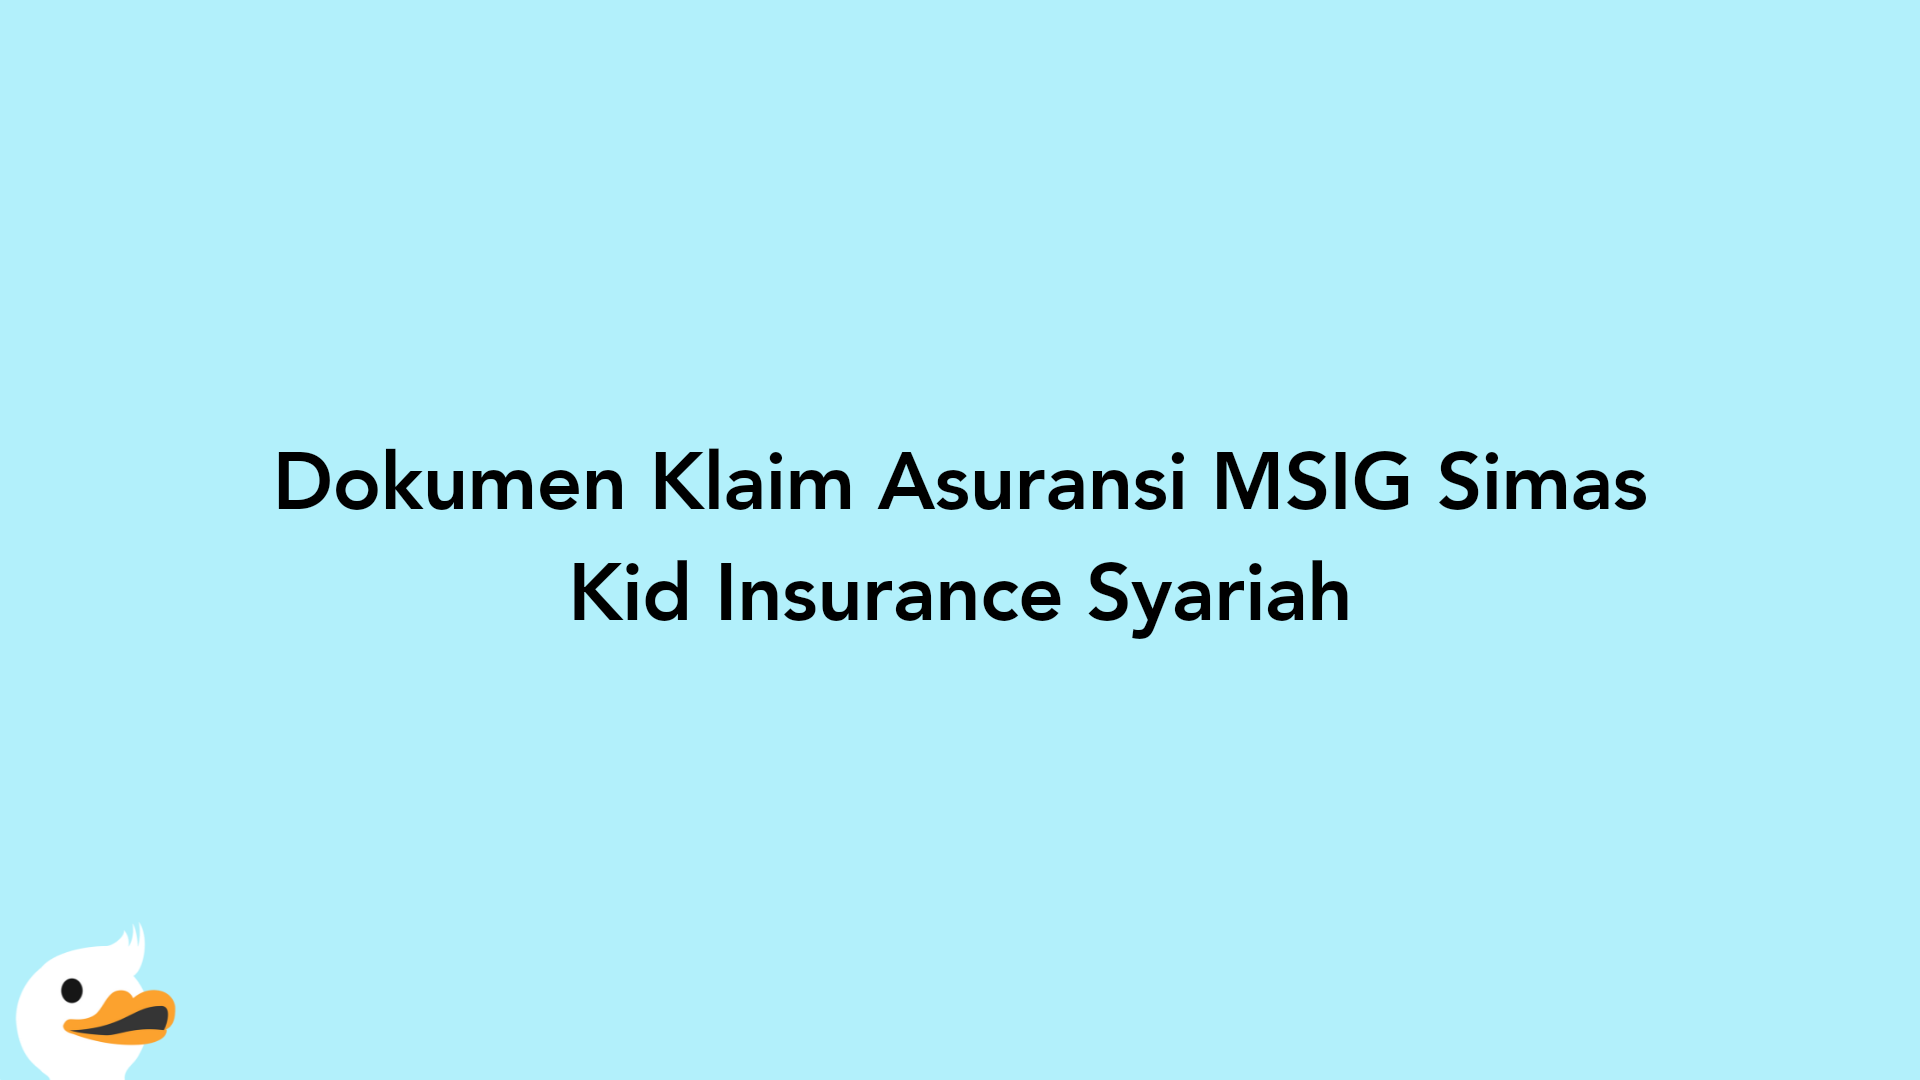 Dokumen Klaim Asuransi MSIG Simas Kid Insurance Syariah